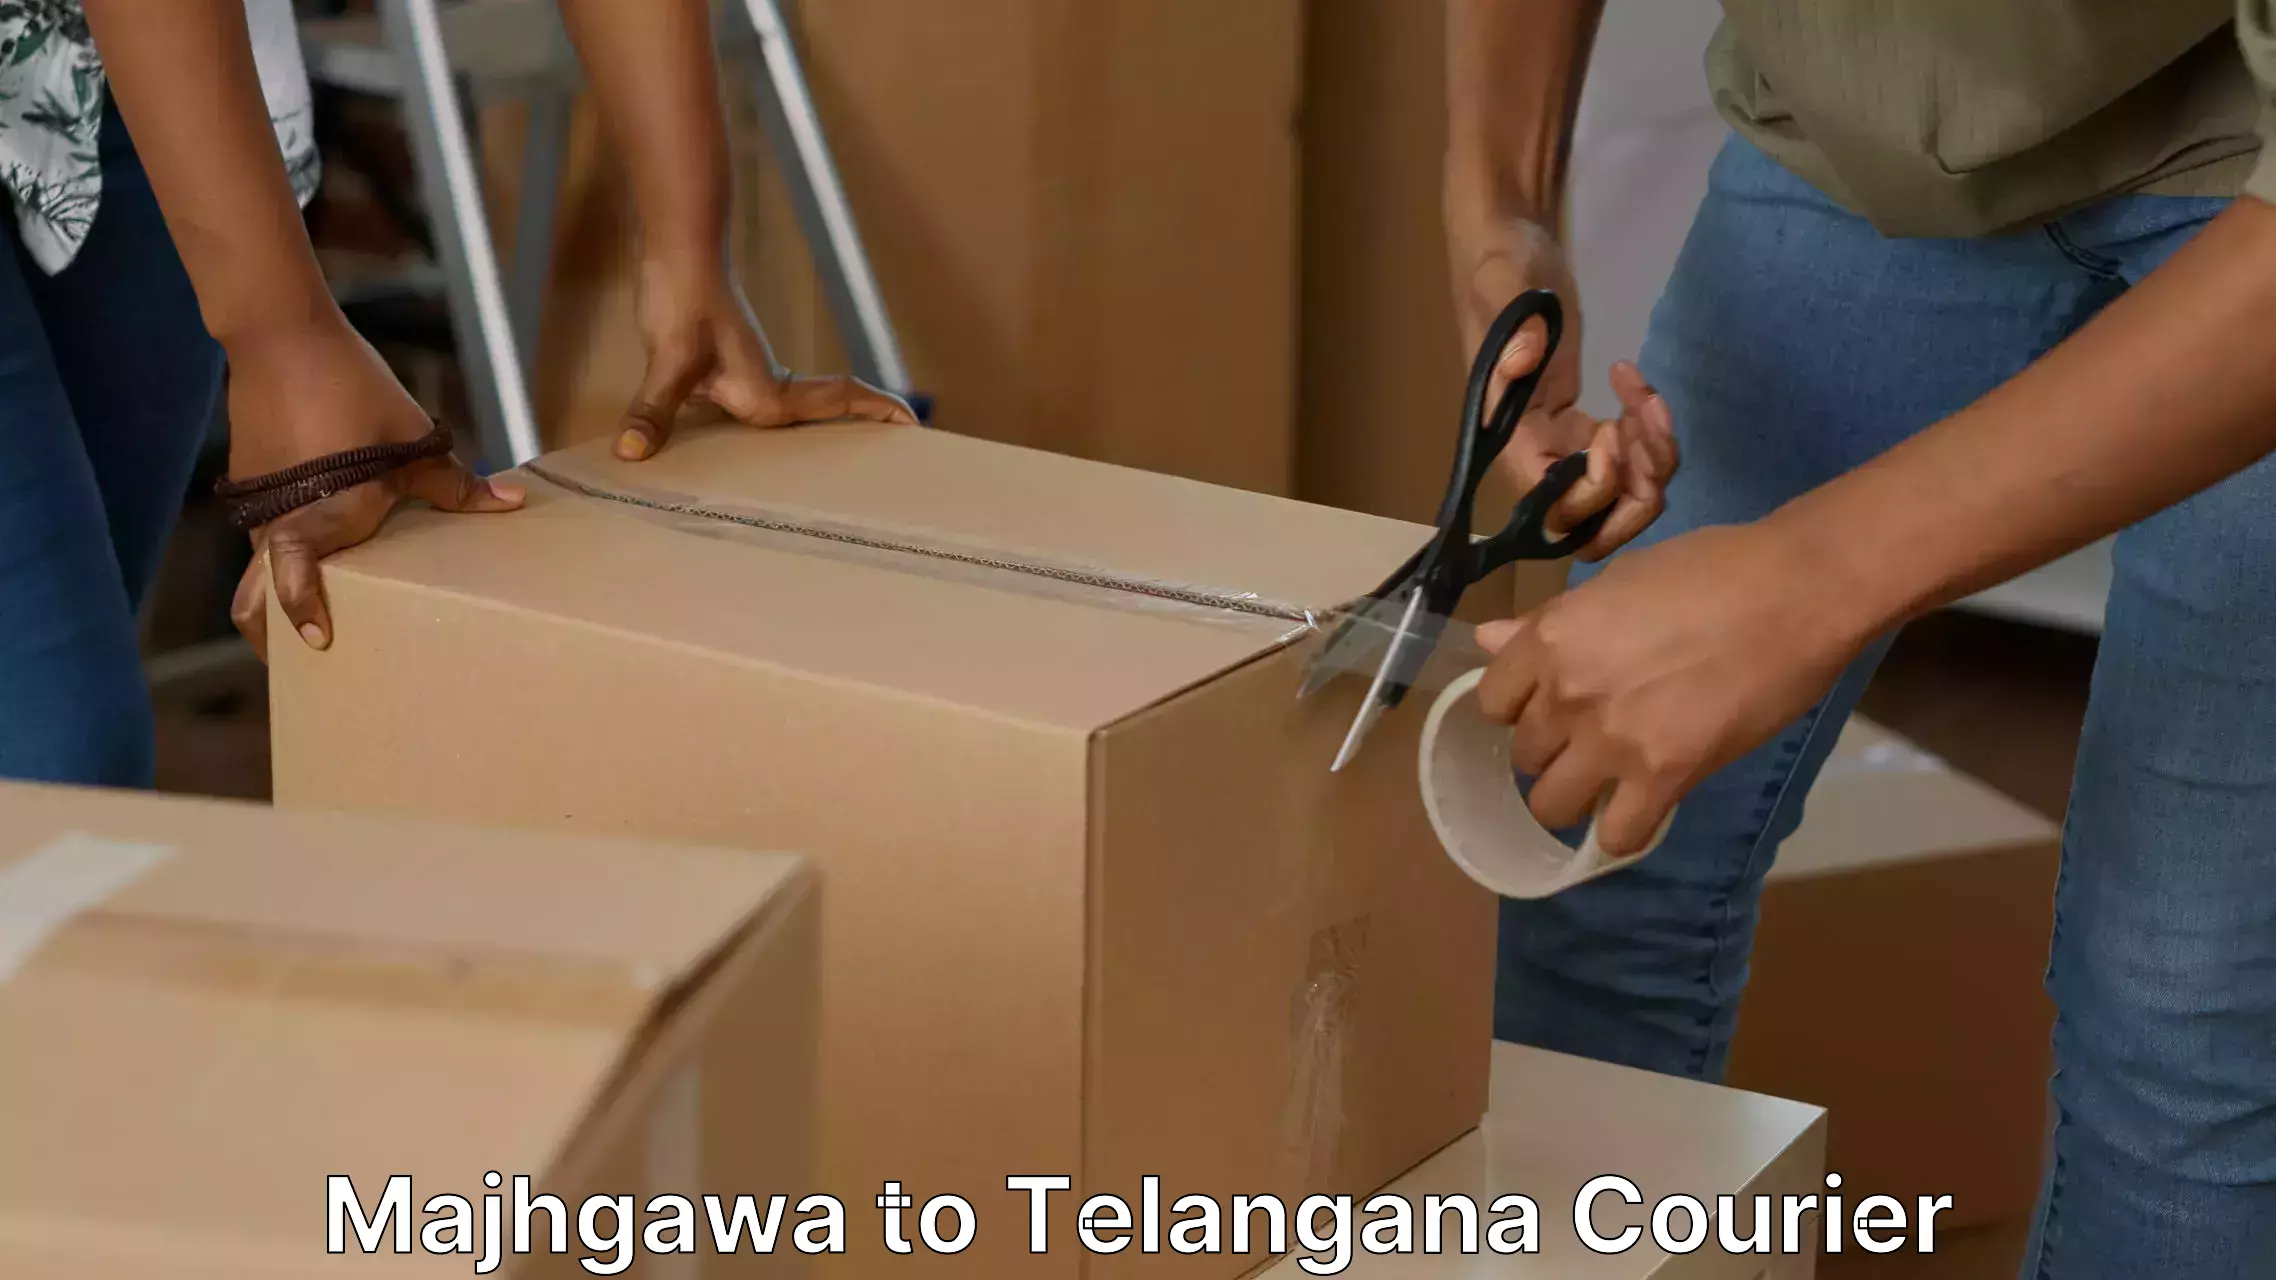 Moving and handling services Majhgawa to Telangana